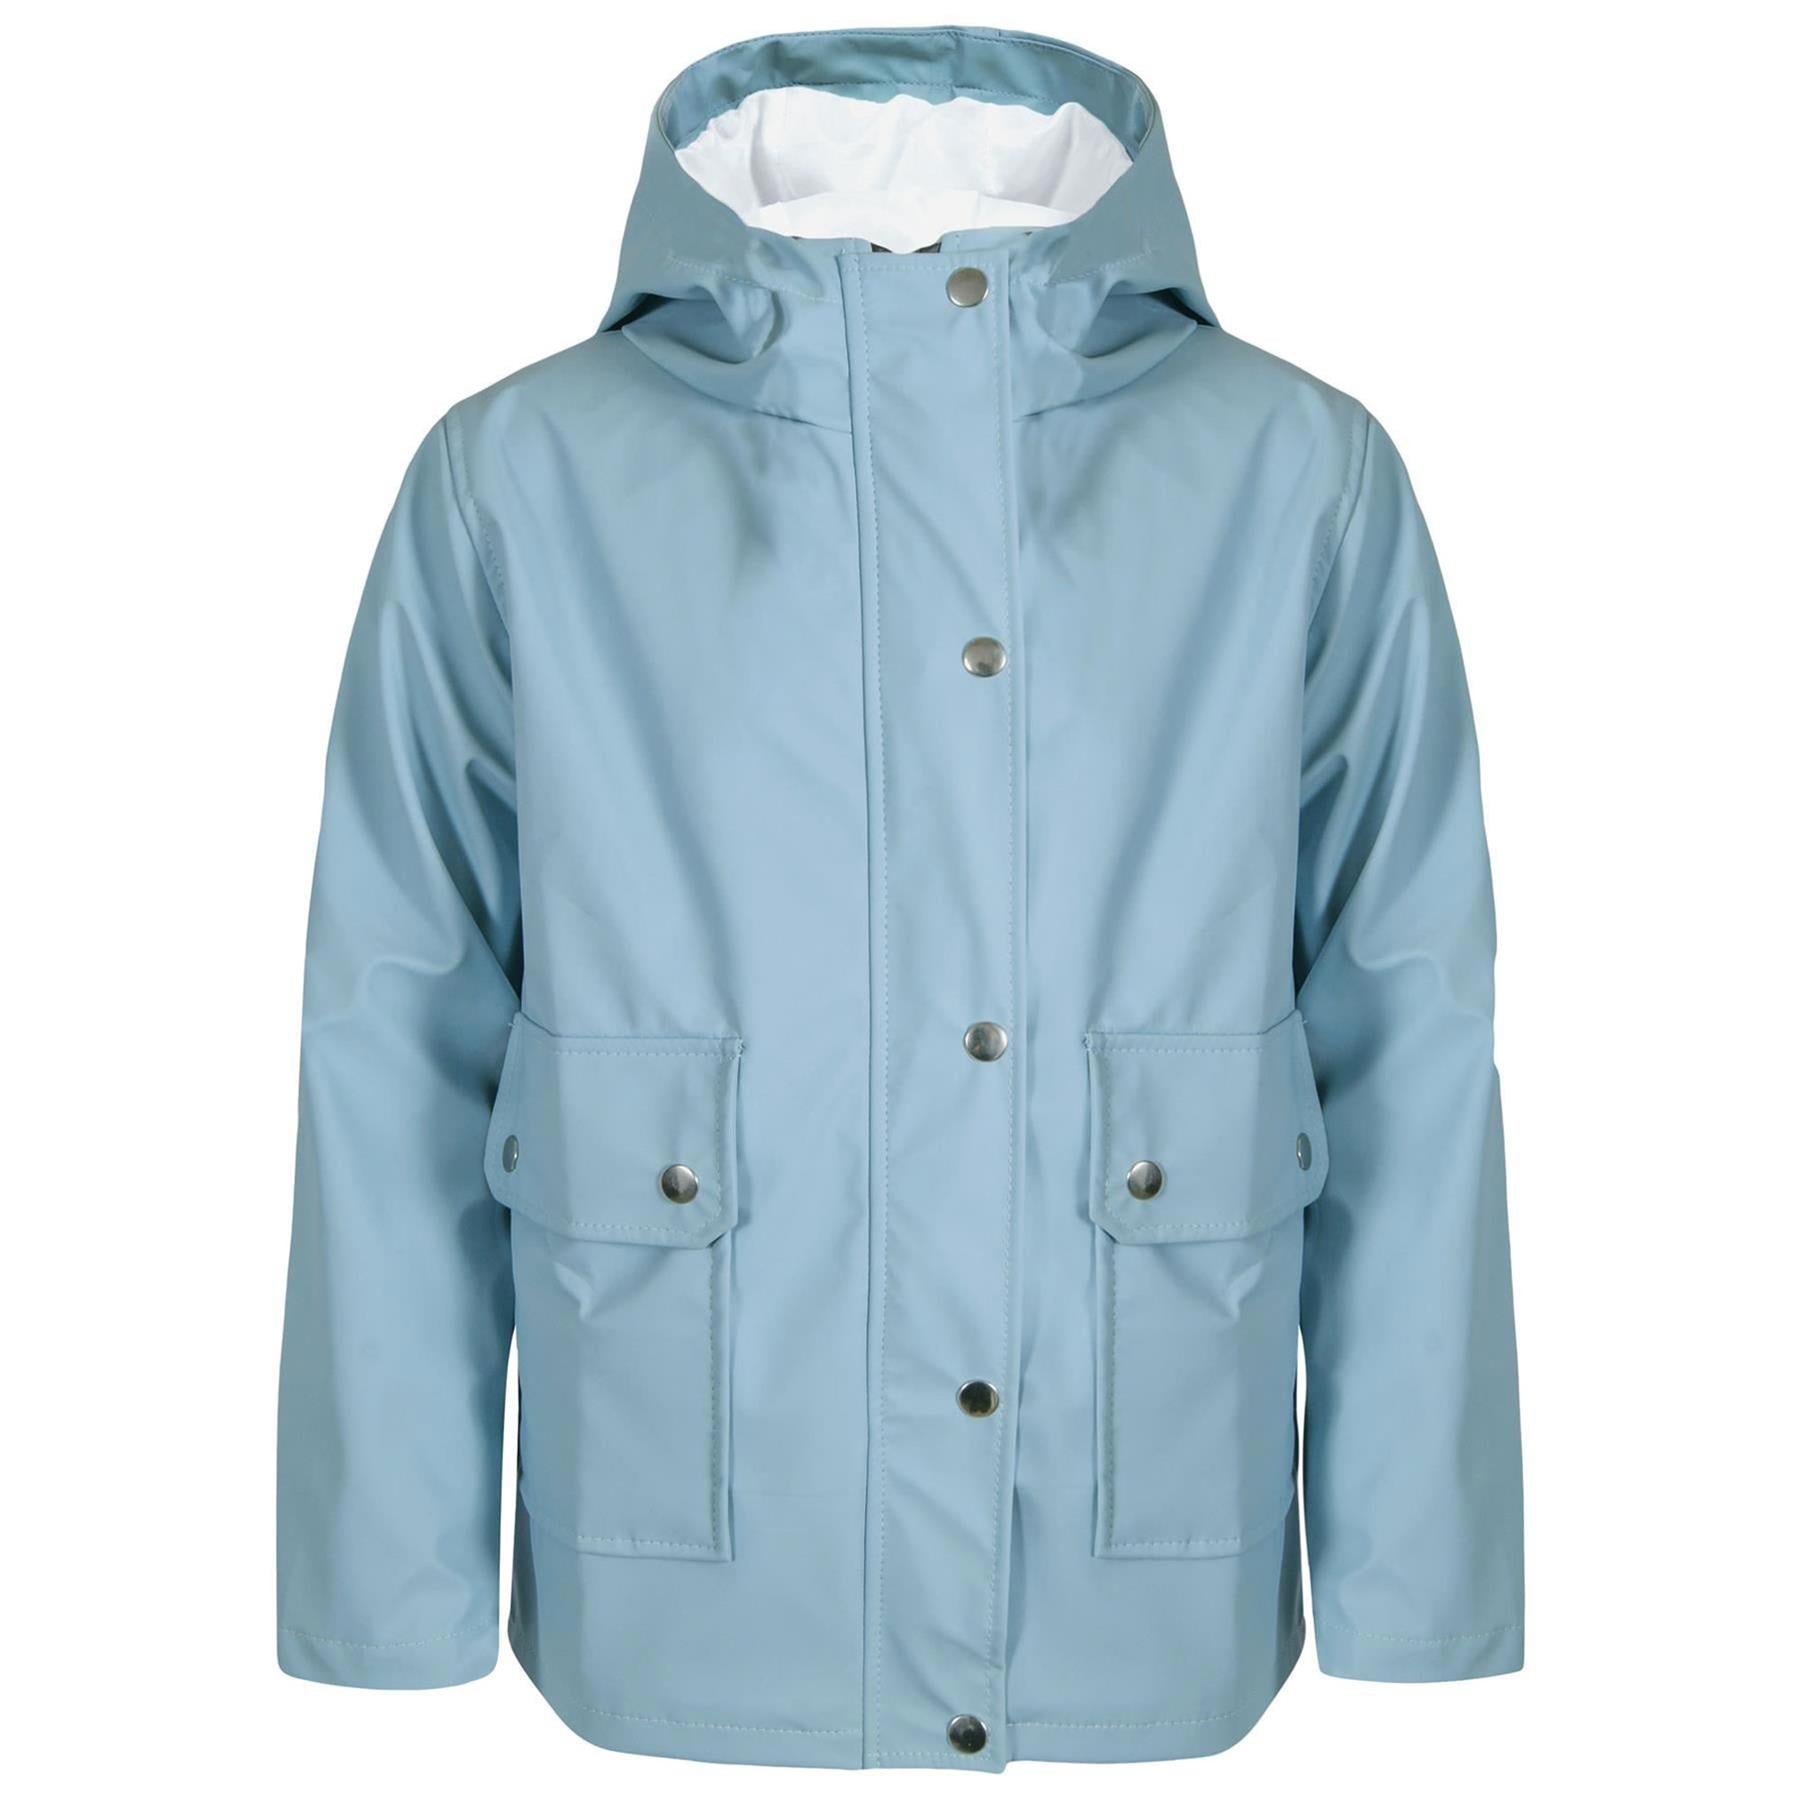 PU Raincoat Jacket Windbreaker Dusty Blue Waterproof Parka Hooded Girls Boys